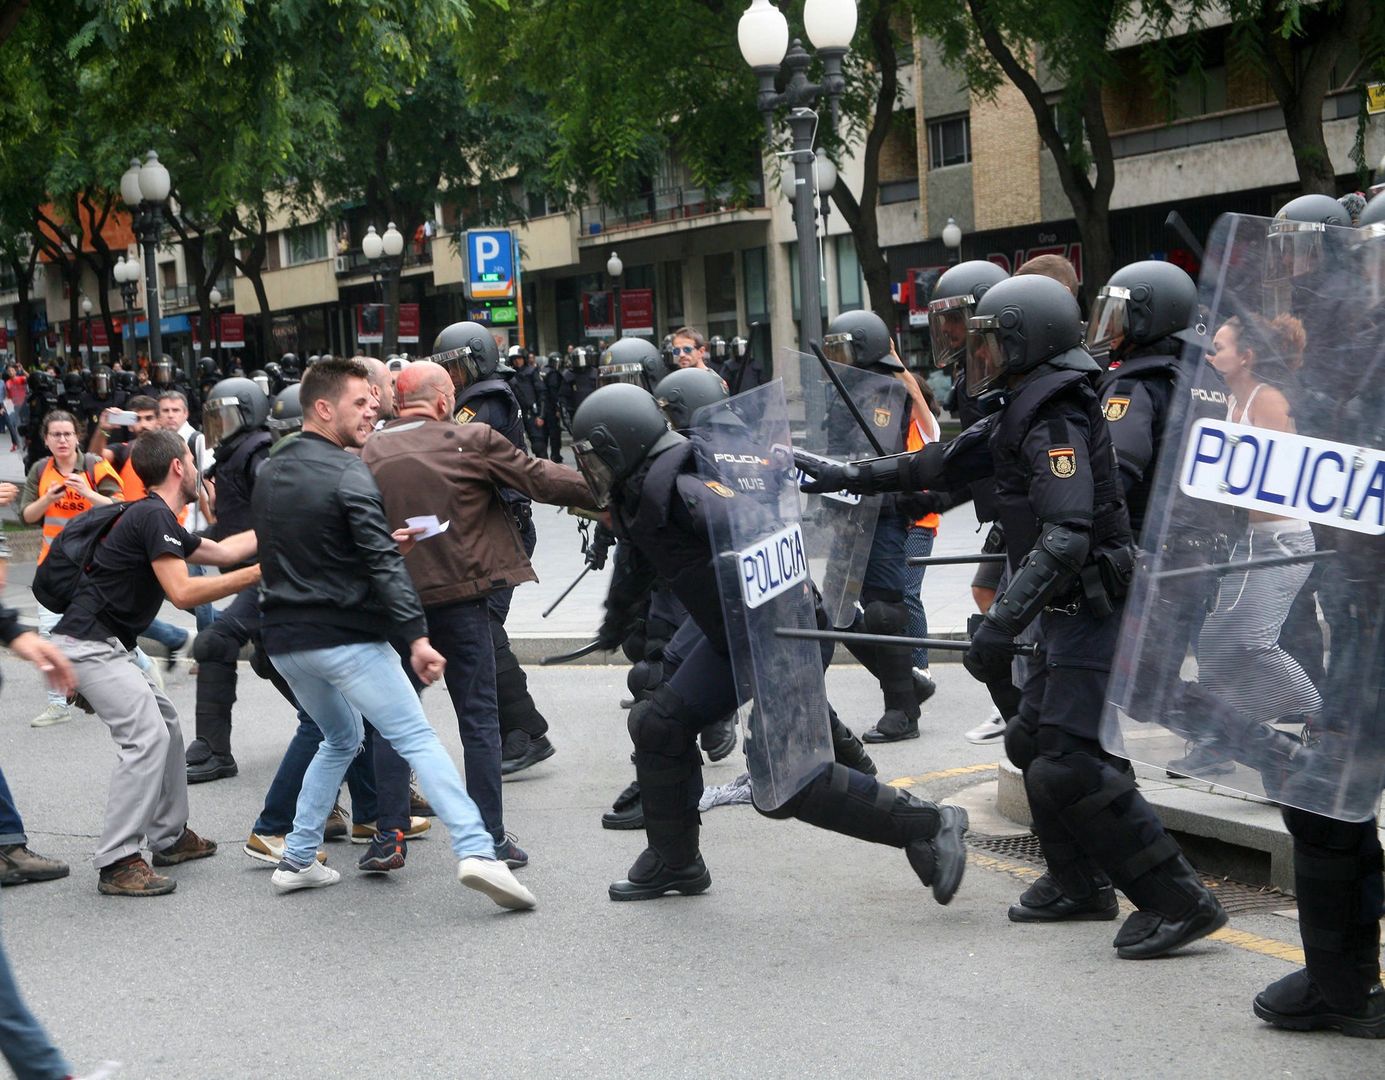 Porażająca liczba rannych w Katalonii. Władze w Madrycie tłumią bunt w regionie